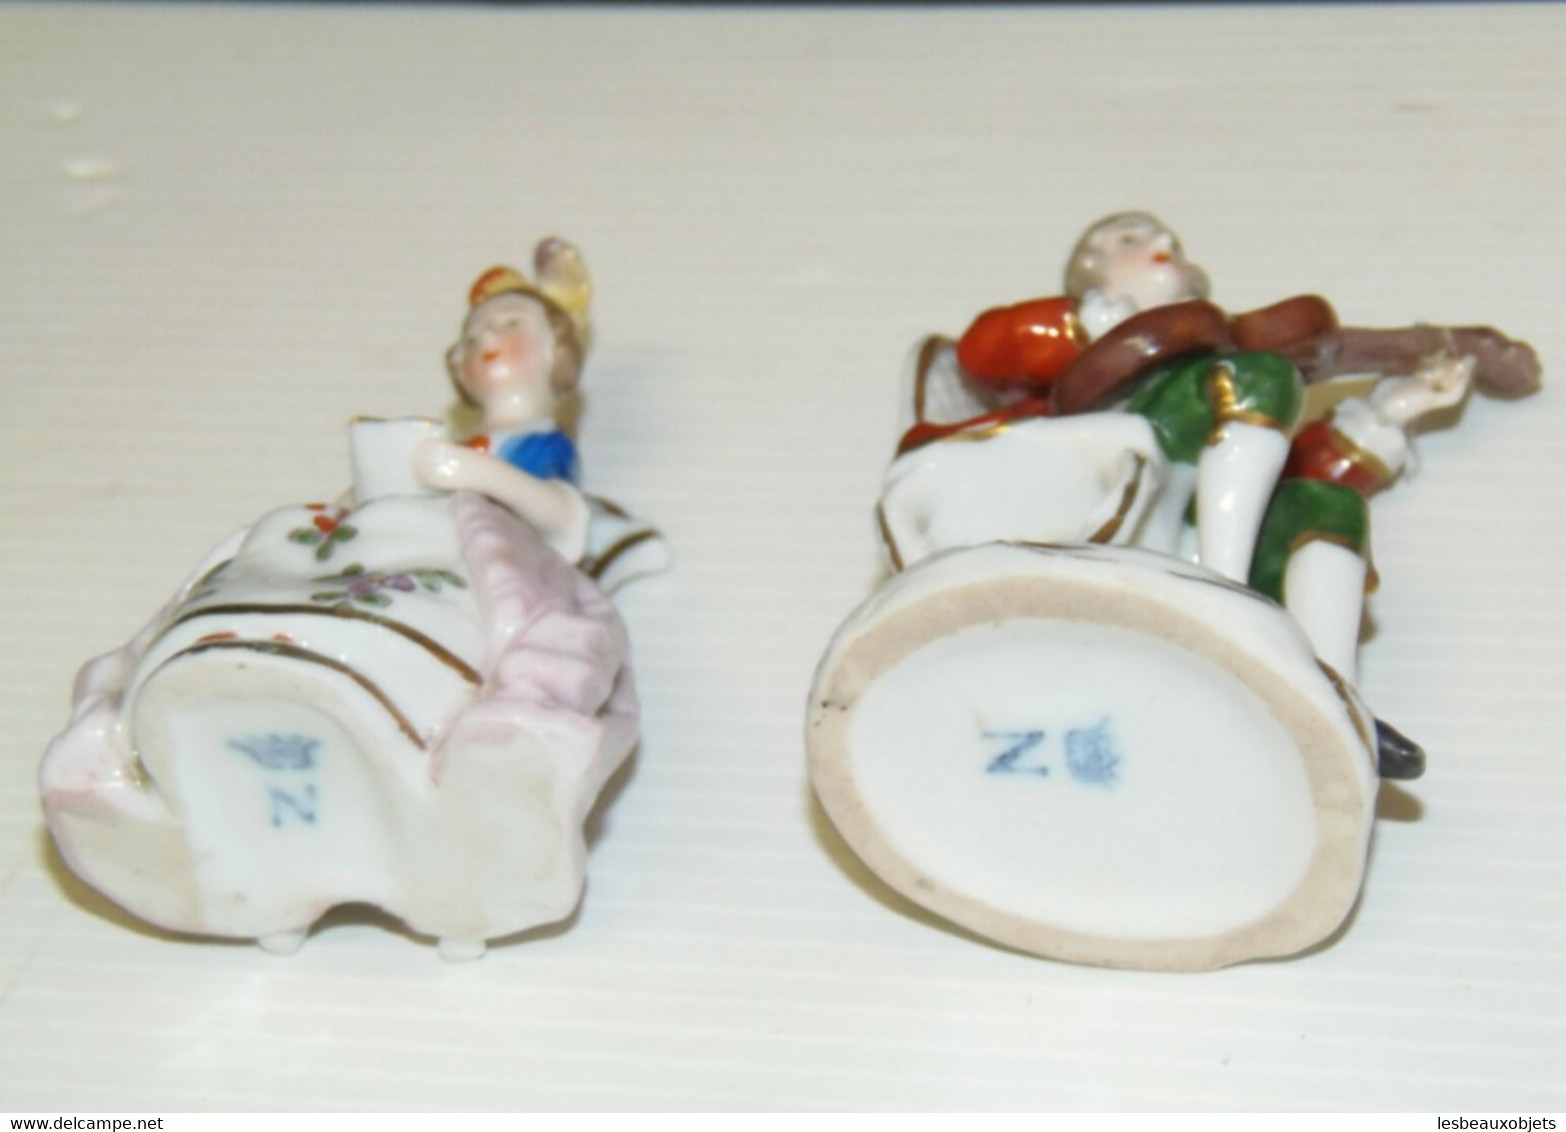 2 SUJETS PERSONNAGES PORCELAINE CAPODIMONTE MUSICIEN objet de vitrine XIXe déco collection miniatures